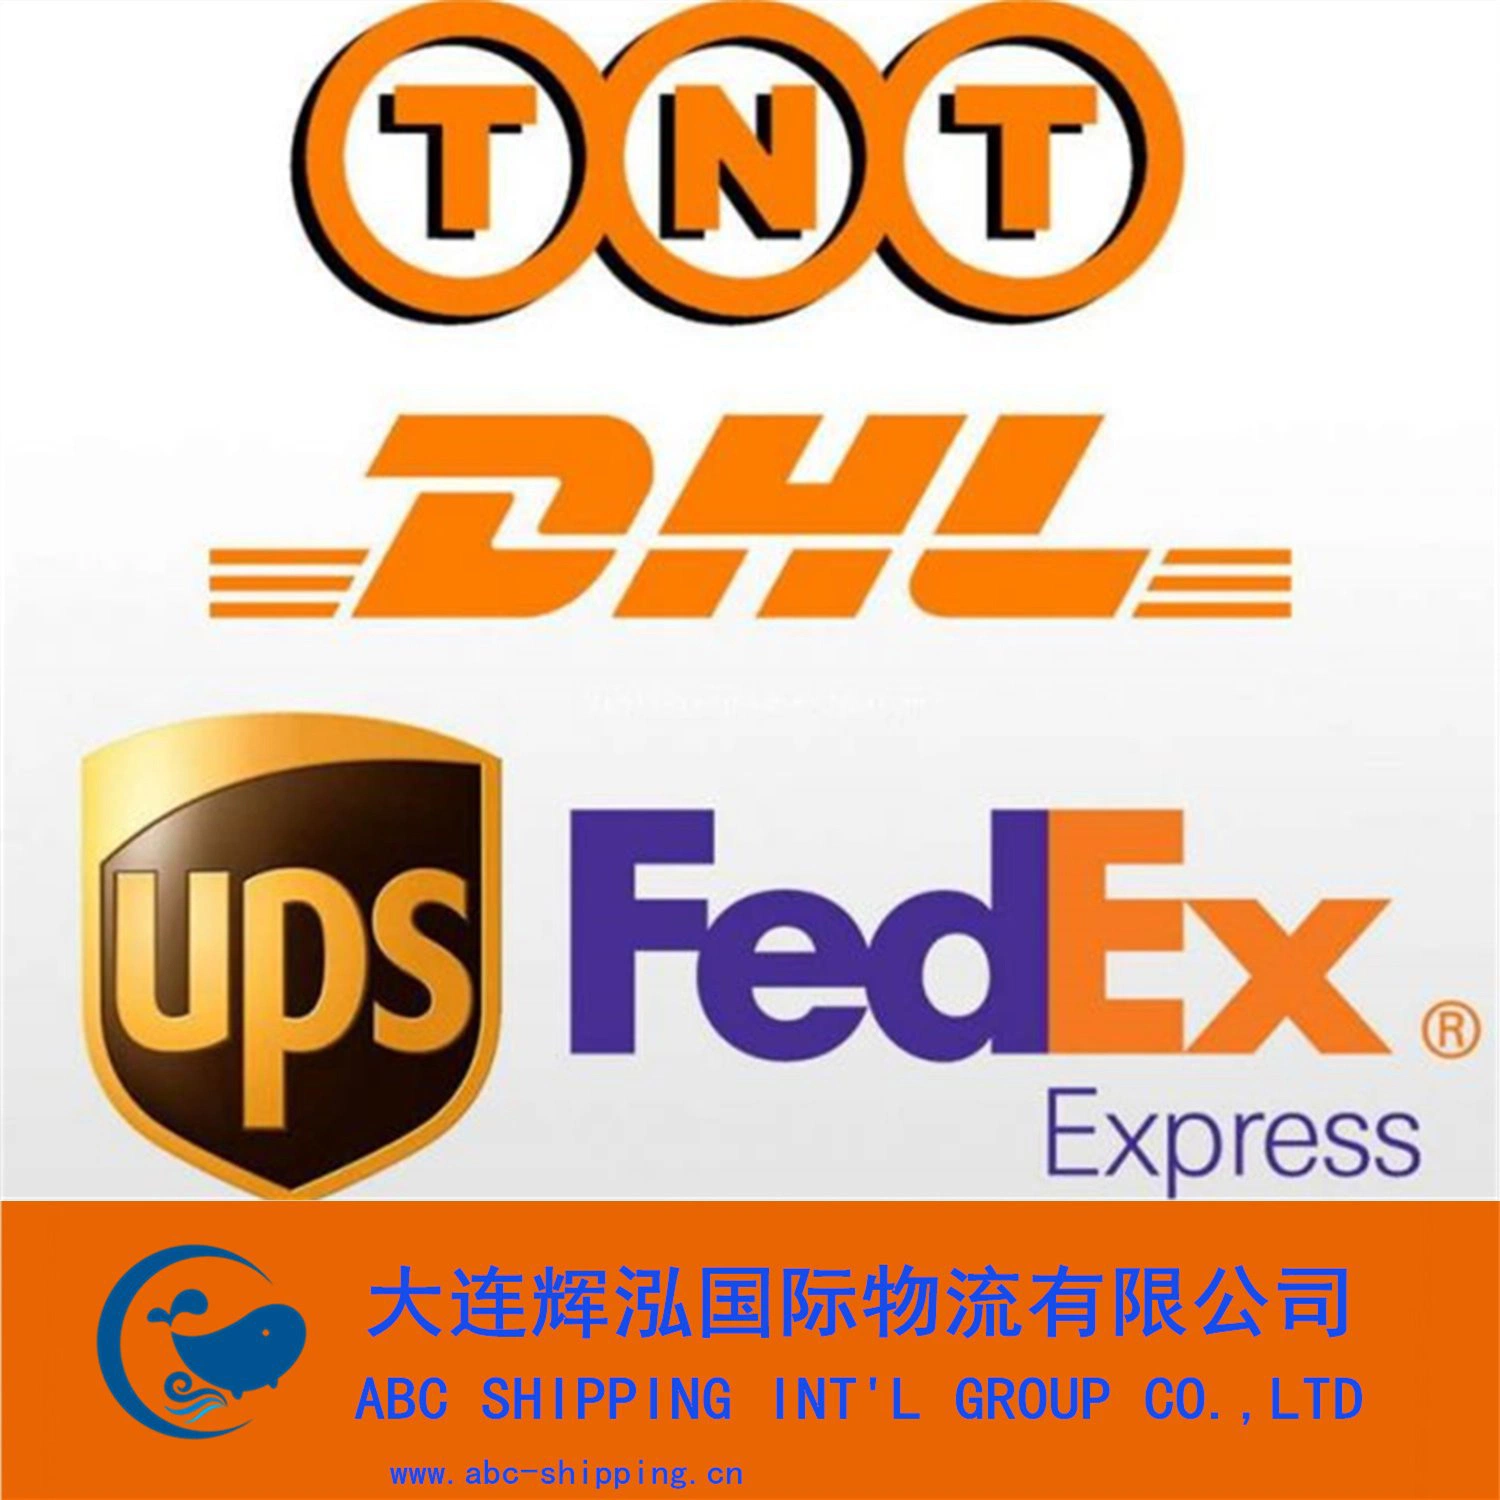 La competitividad de Express Courier de agente de transporte de mercancías para el Fba/envío de Amazon